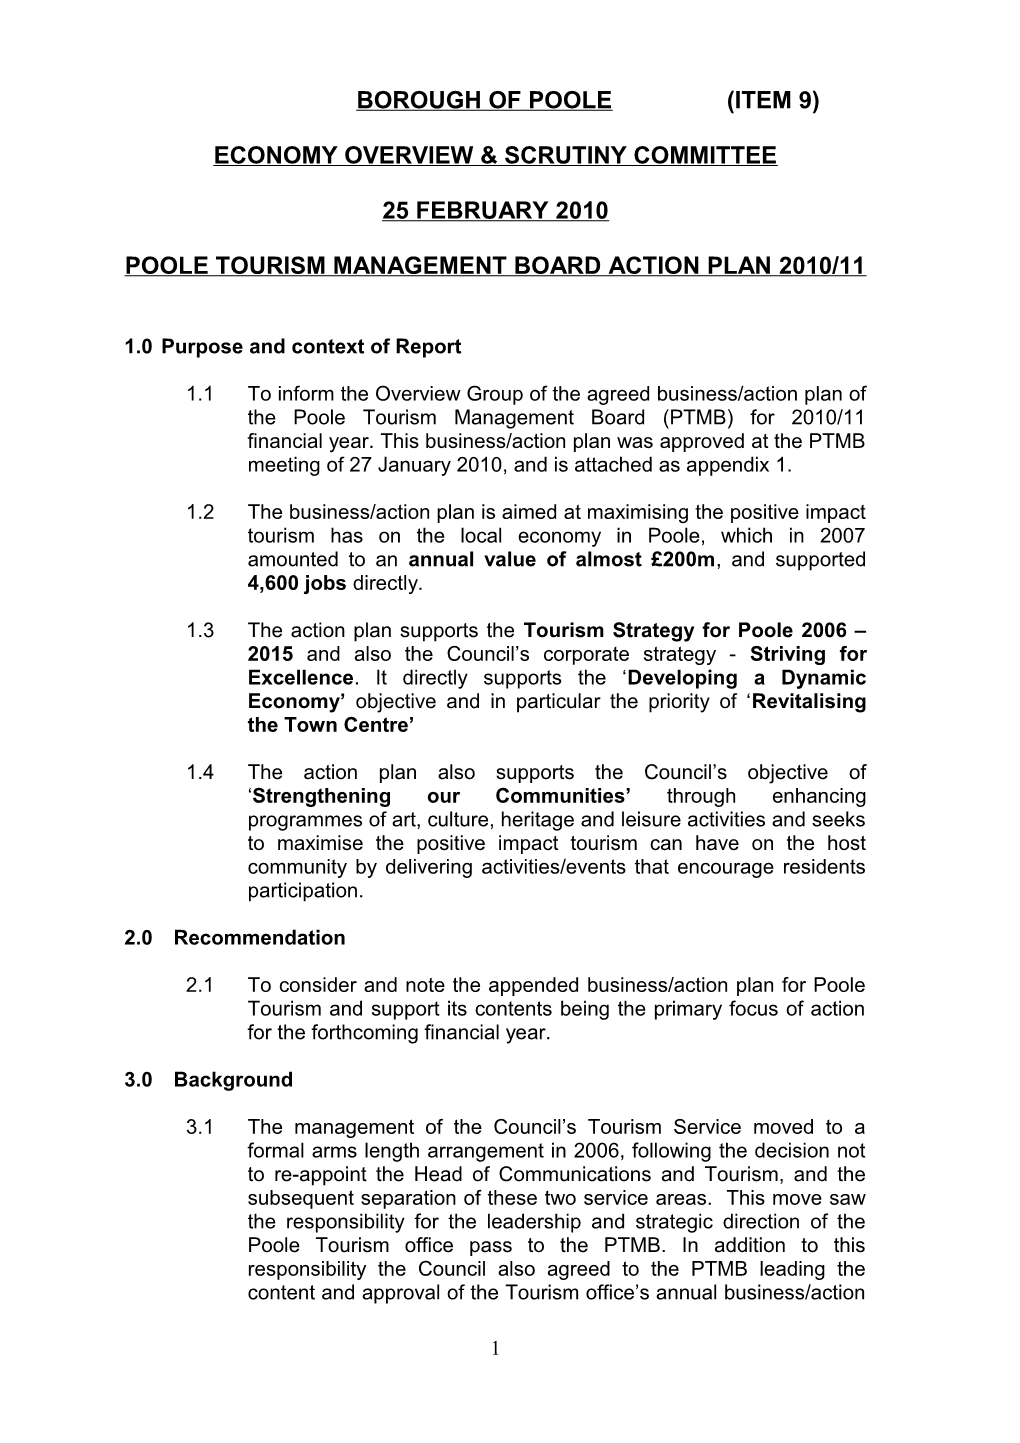 Poole Tourism Management Board Action Plan 2010/11